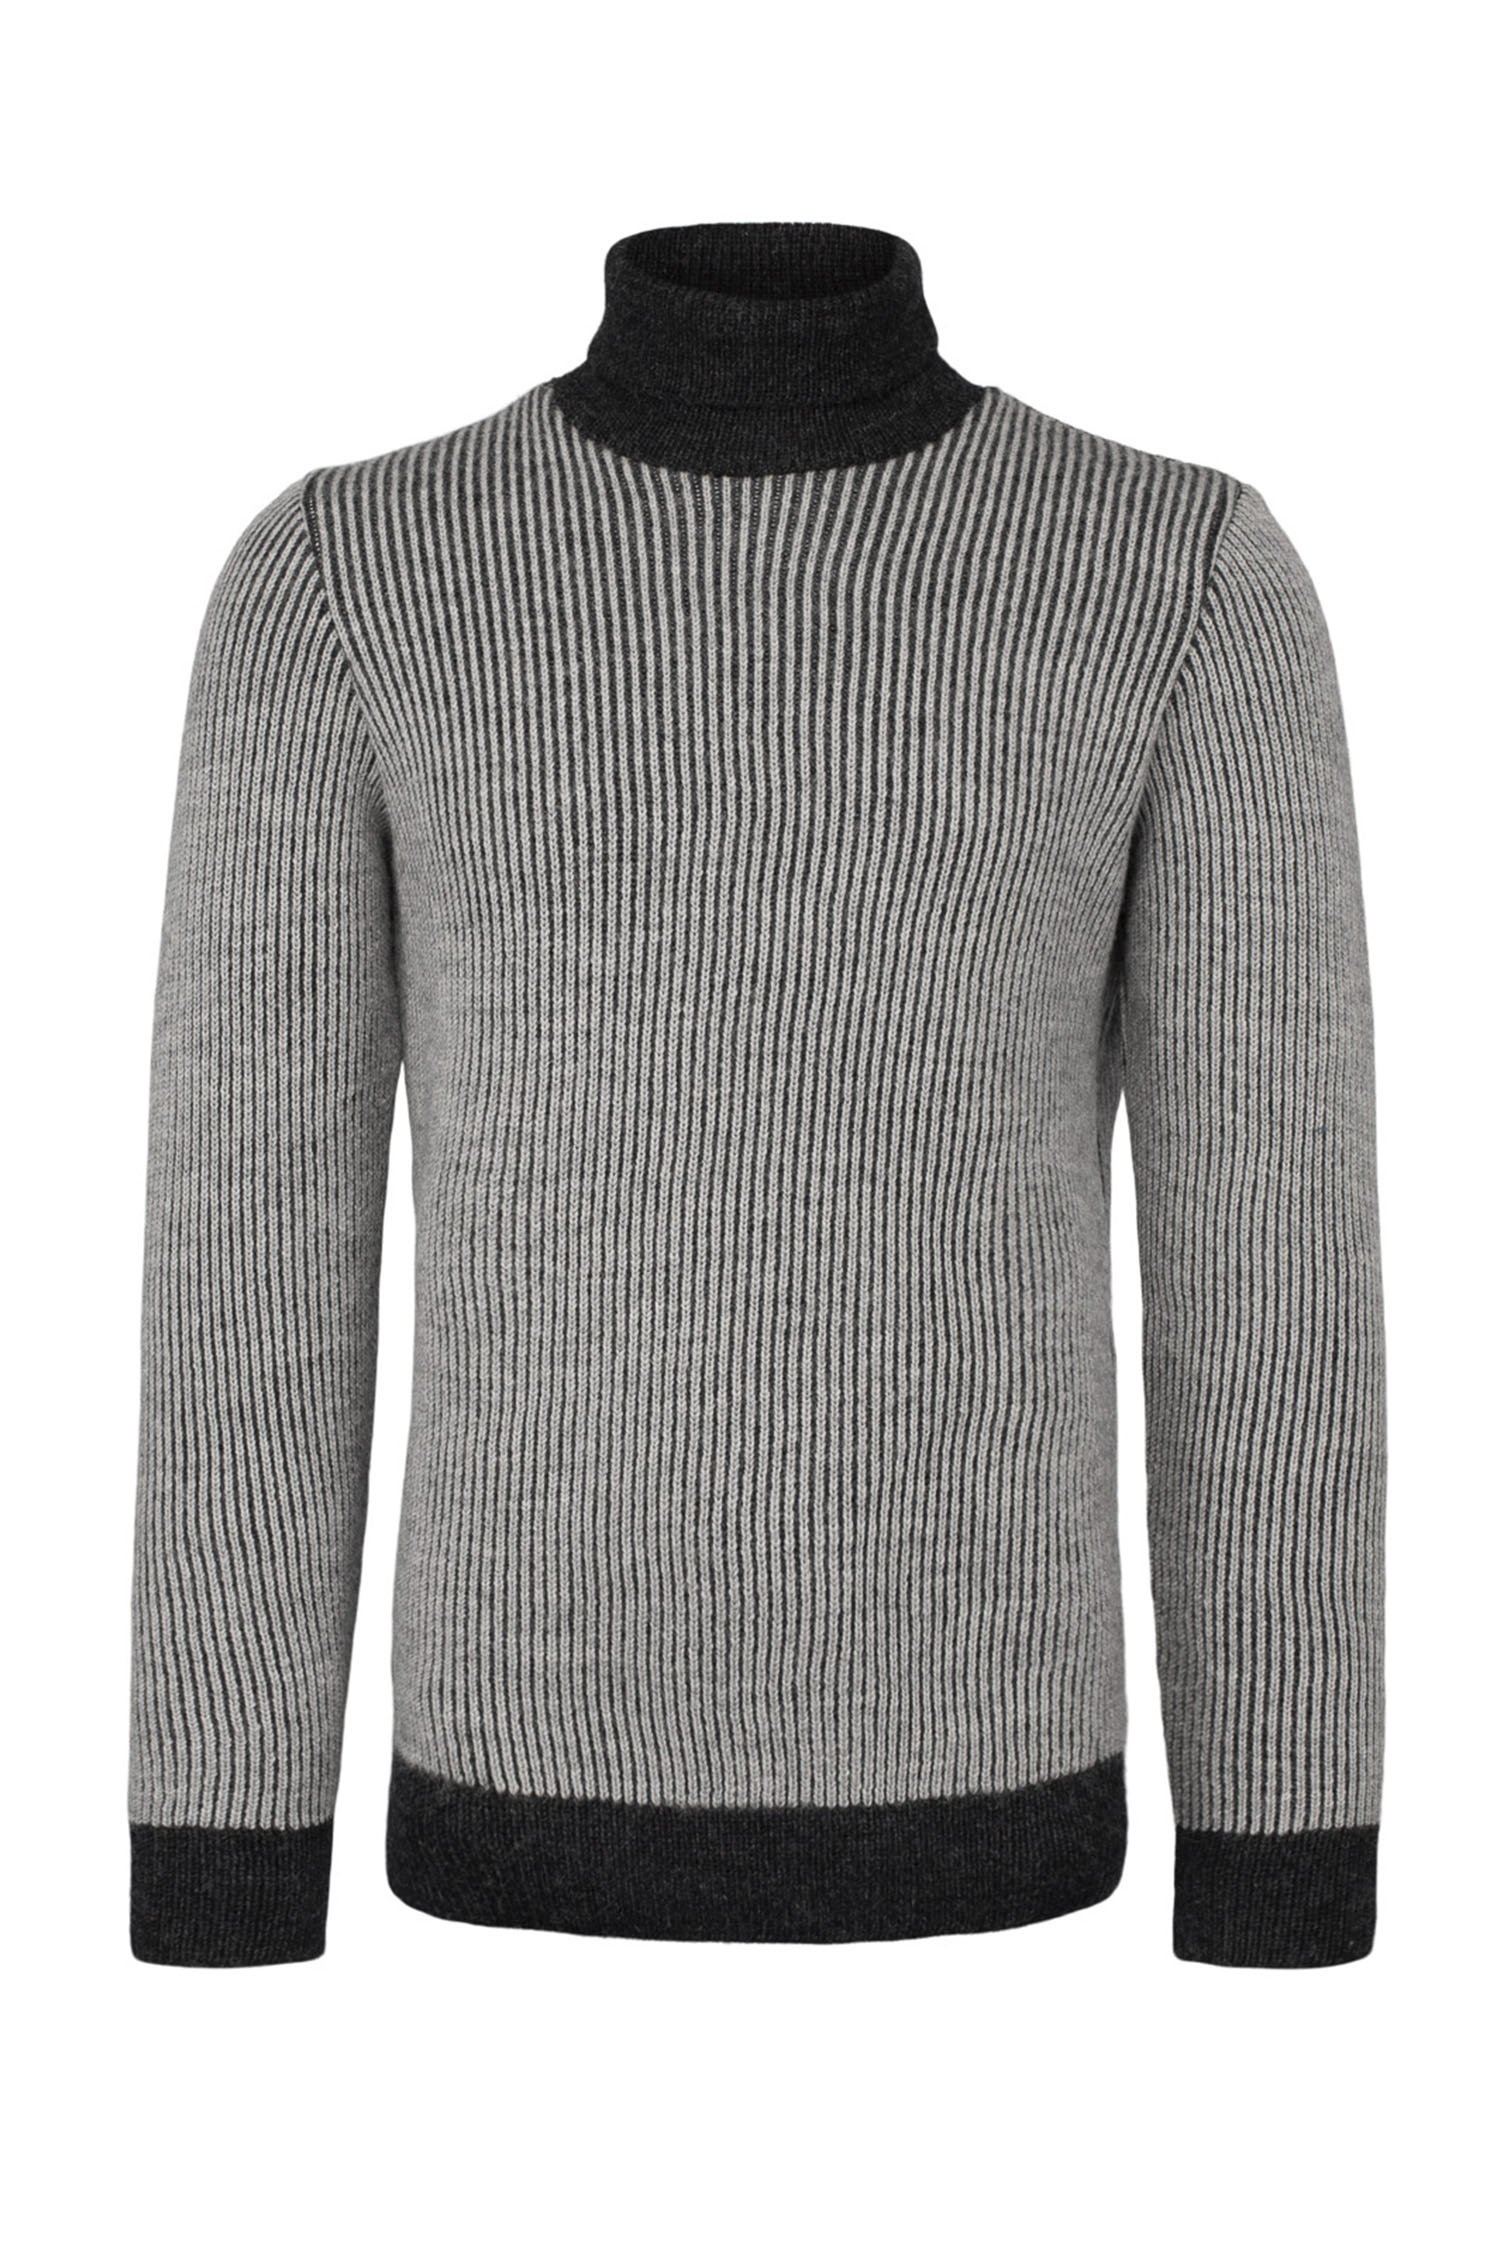 Norlender Knitwear UK — Finnøy wool set